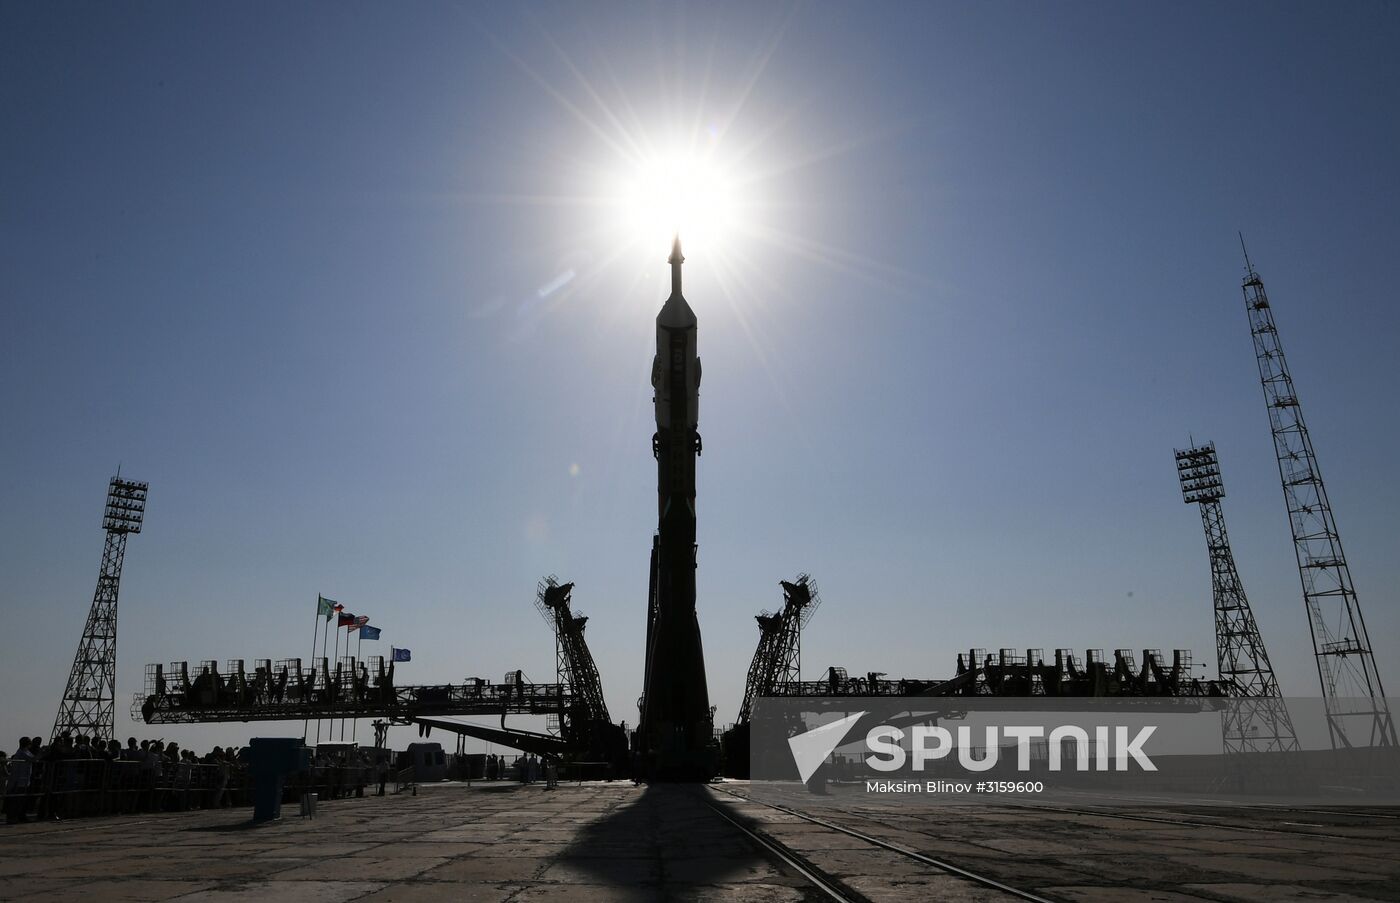 Soyuz-FG carrier rocket and Soyuz MS-05 spacecraft installed at Baikonur launch site